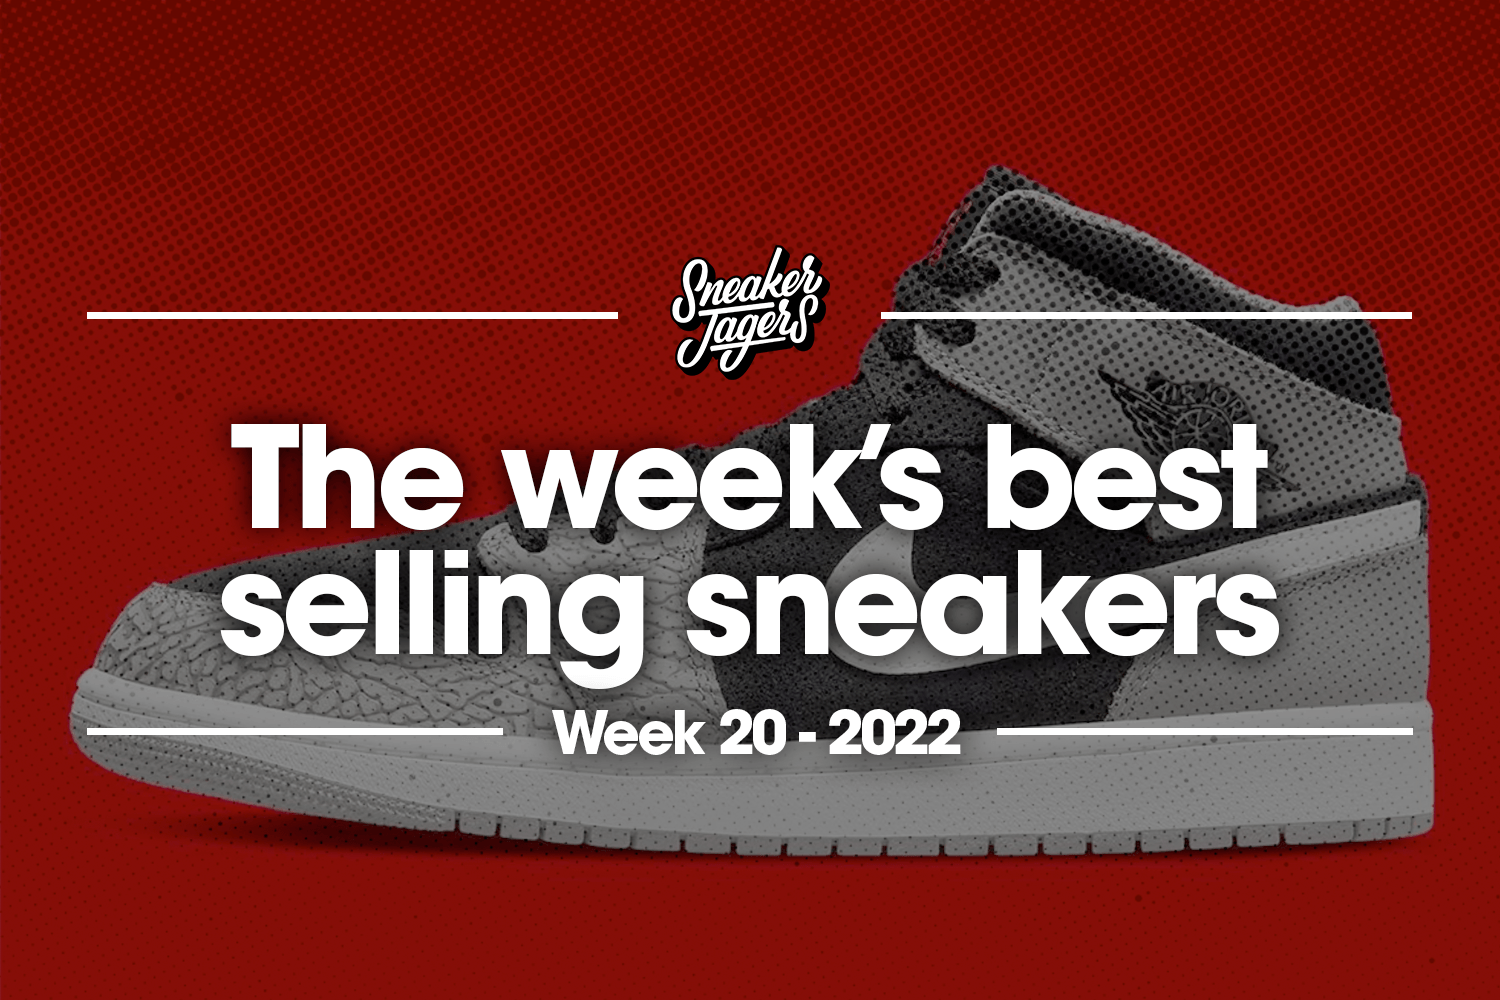 The 5 best selling sneakers of week 20